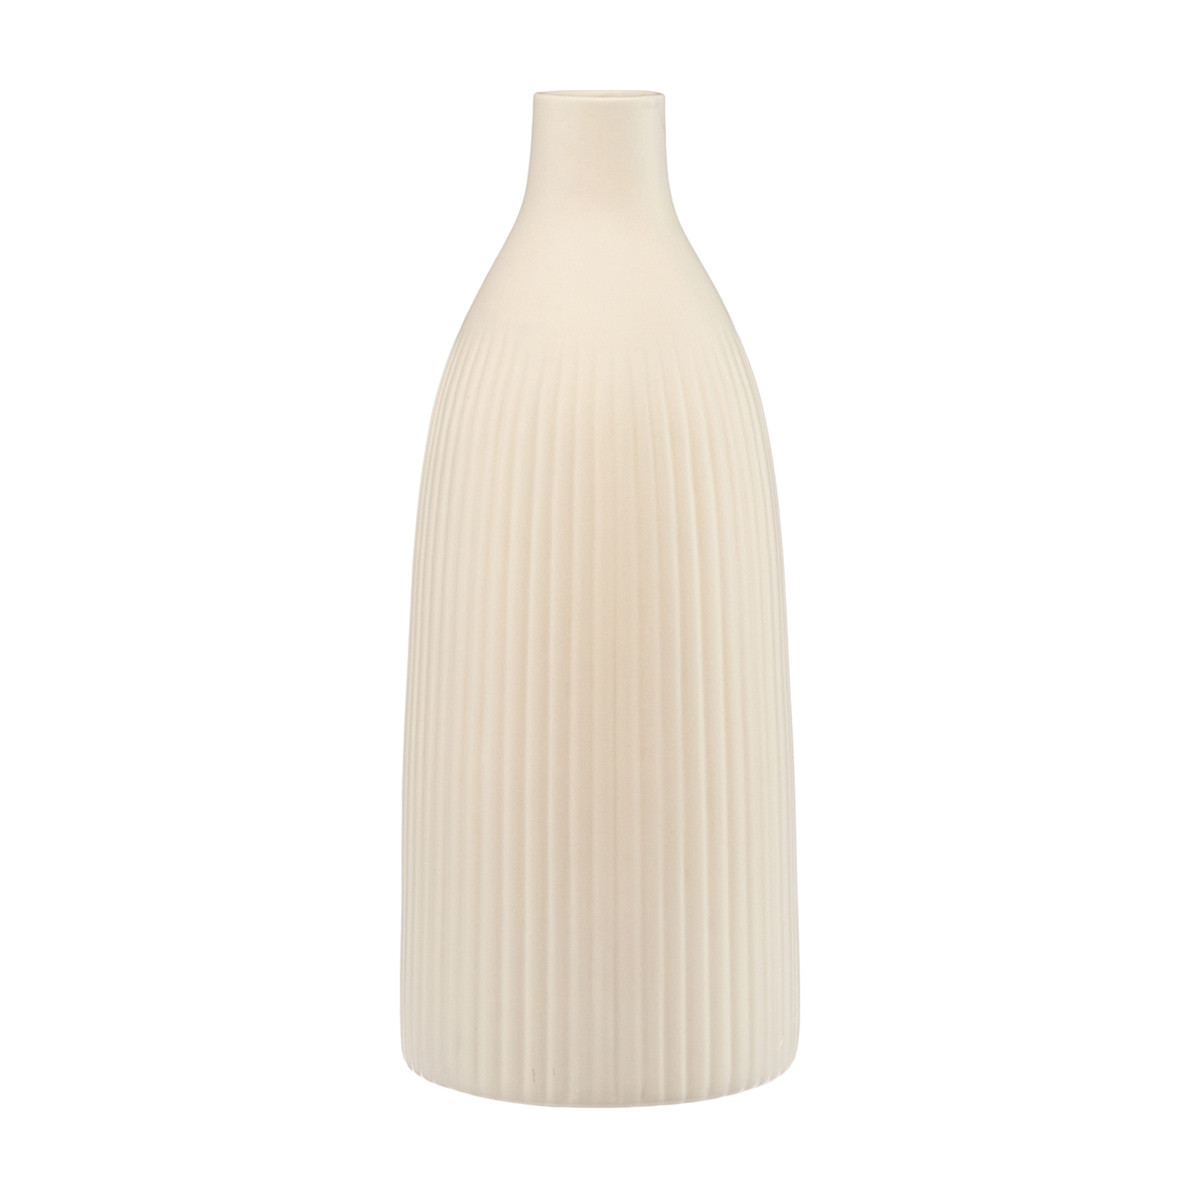 Ribbed Decorative Bottle Vase, 14.5 in